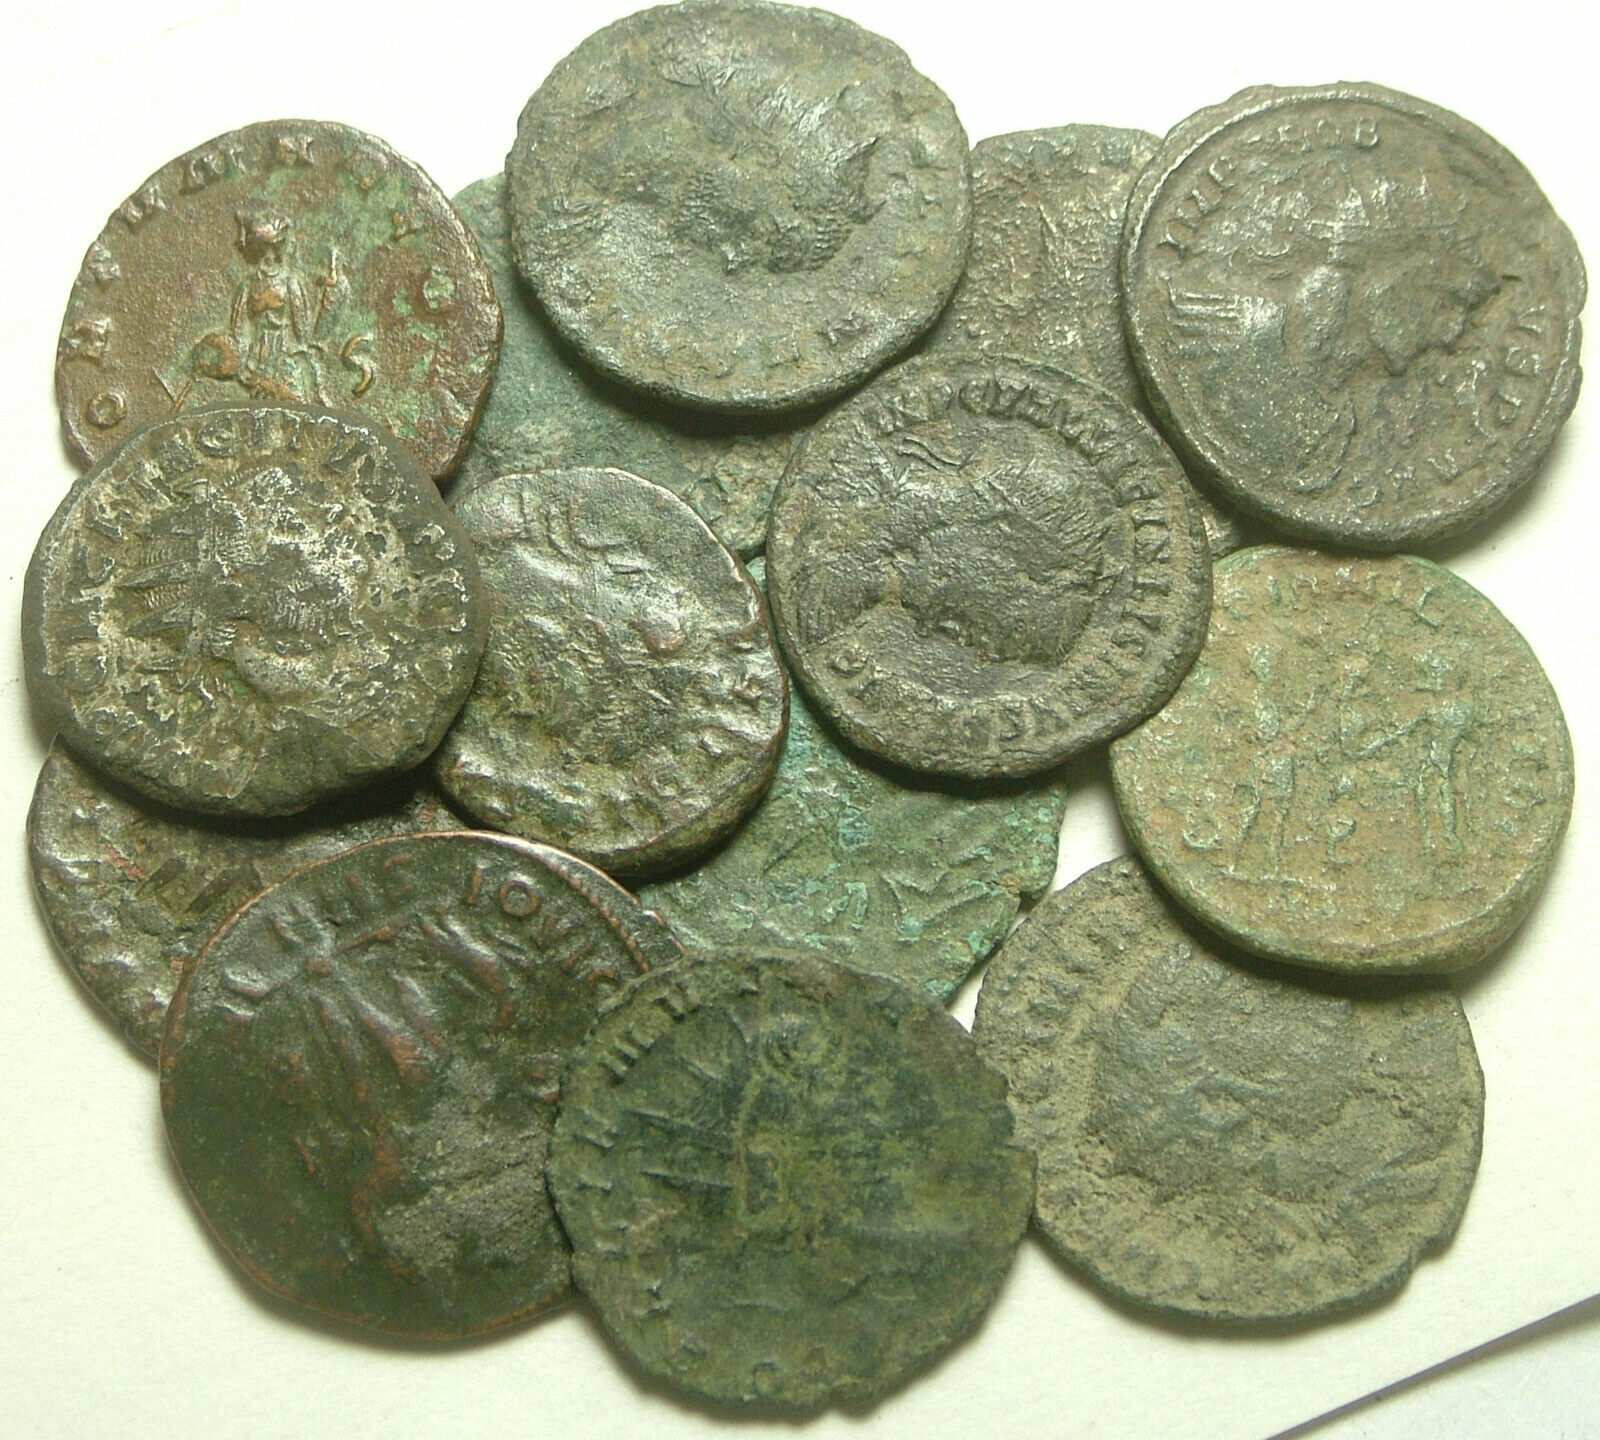 Lot of 3 Rare original Ancient Roman Antoninianus coins Probus Aurelian Claudius Без бренда - фотография #12